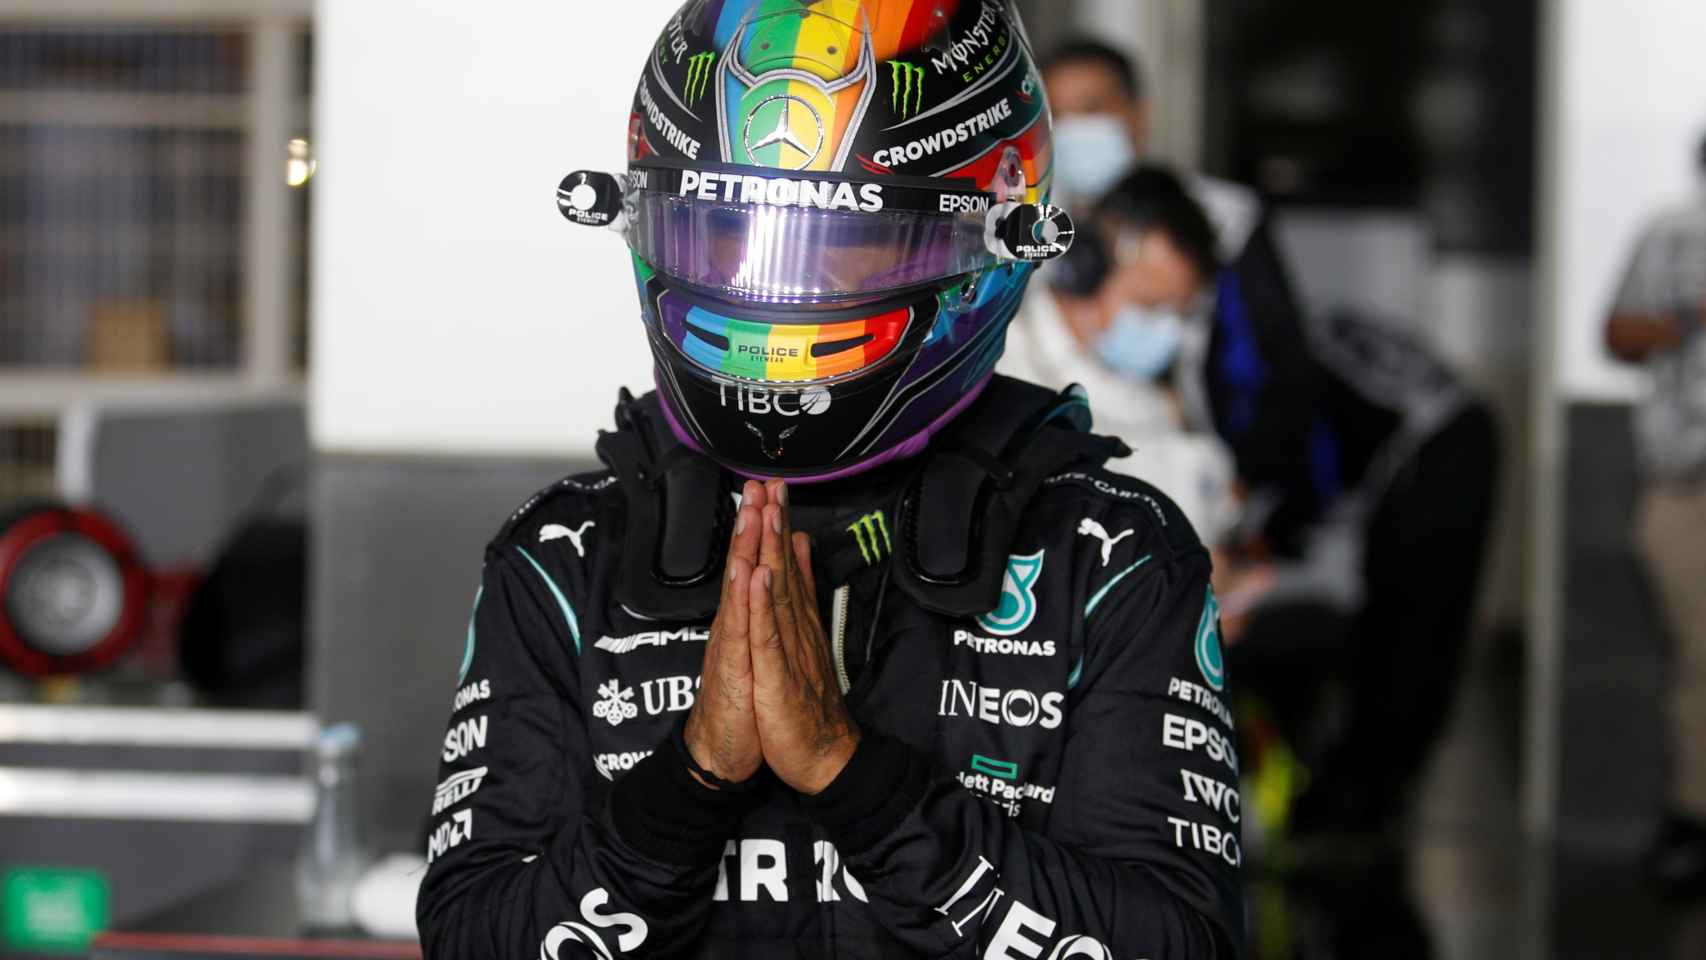 Lewis Hamilton con el caso de colores LGTBI en Qatar